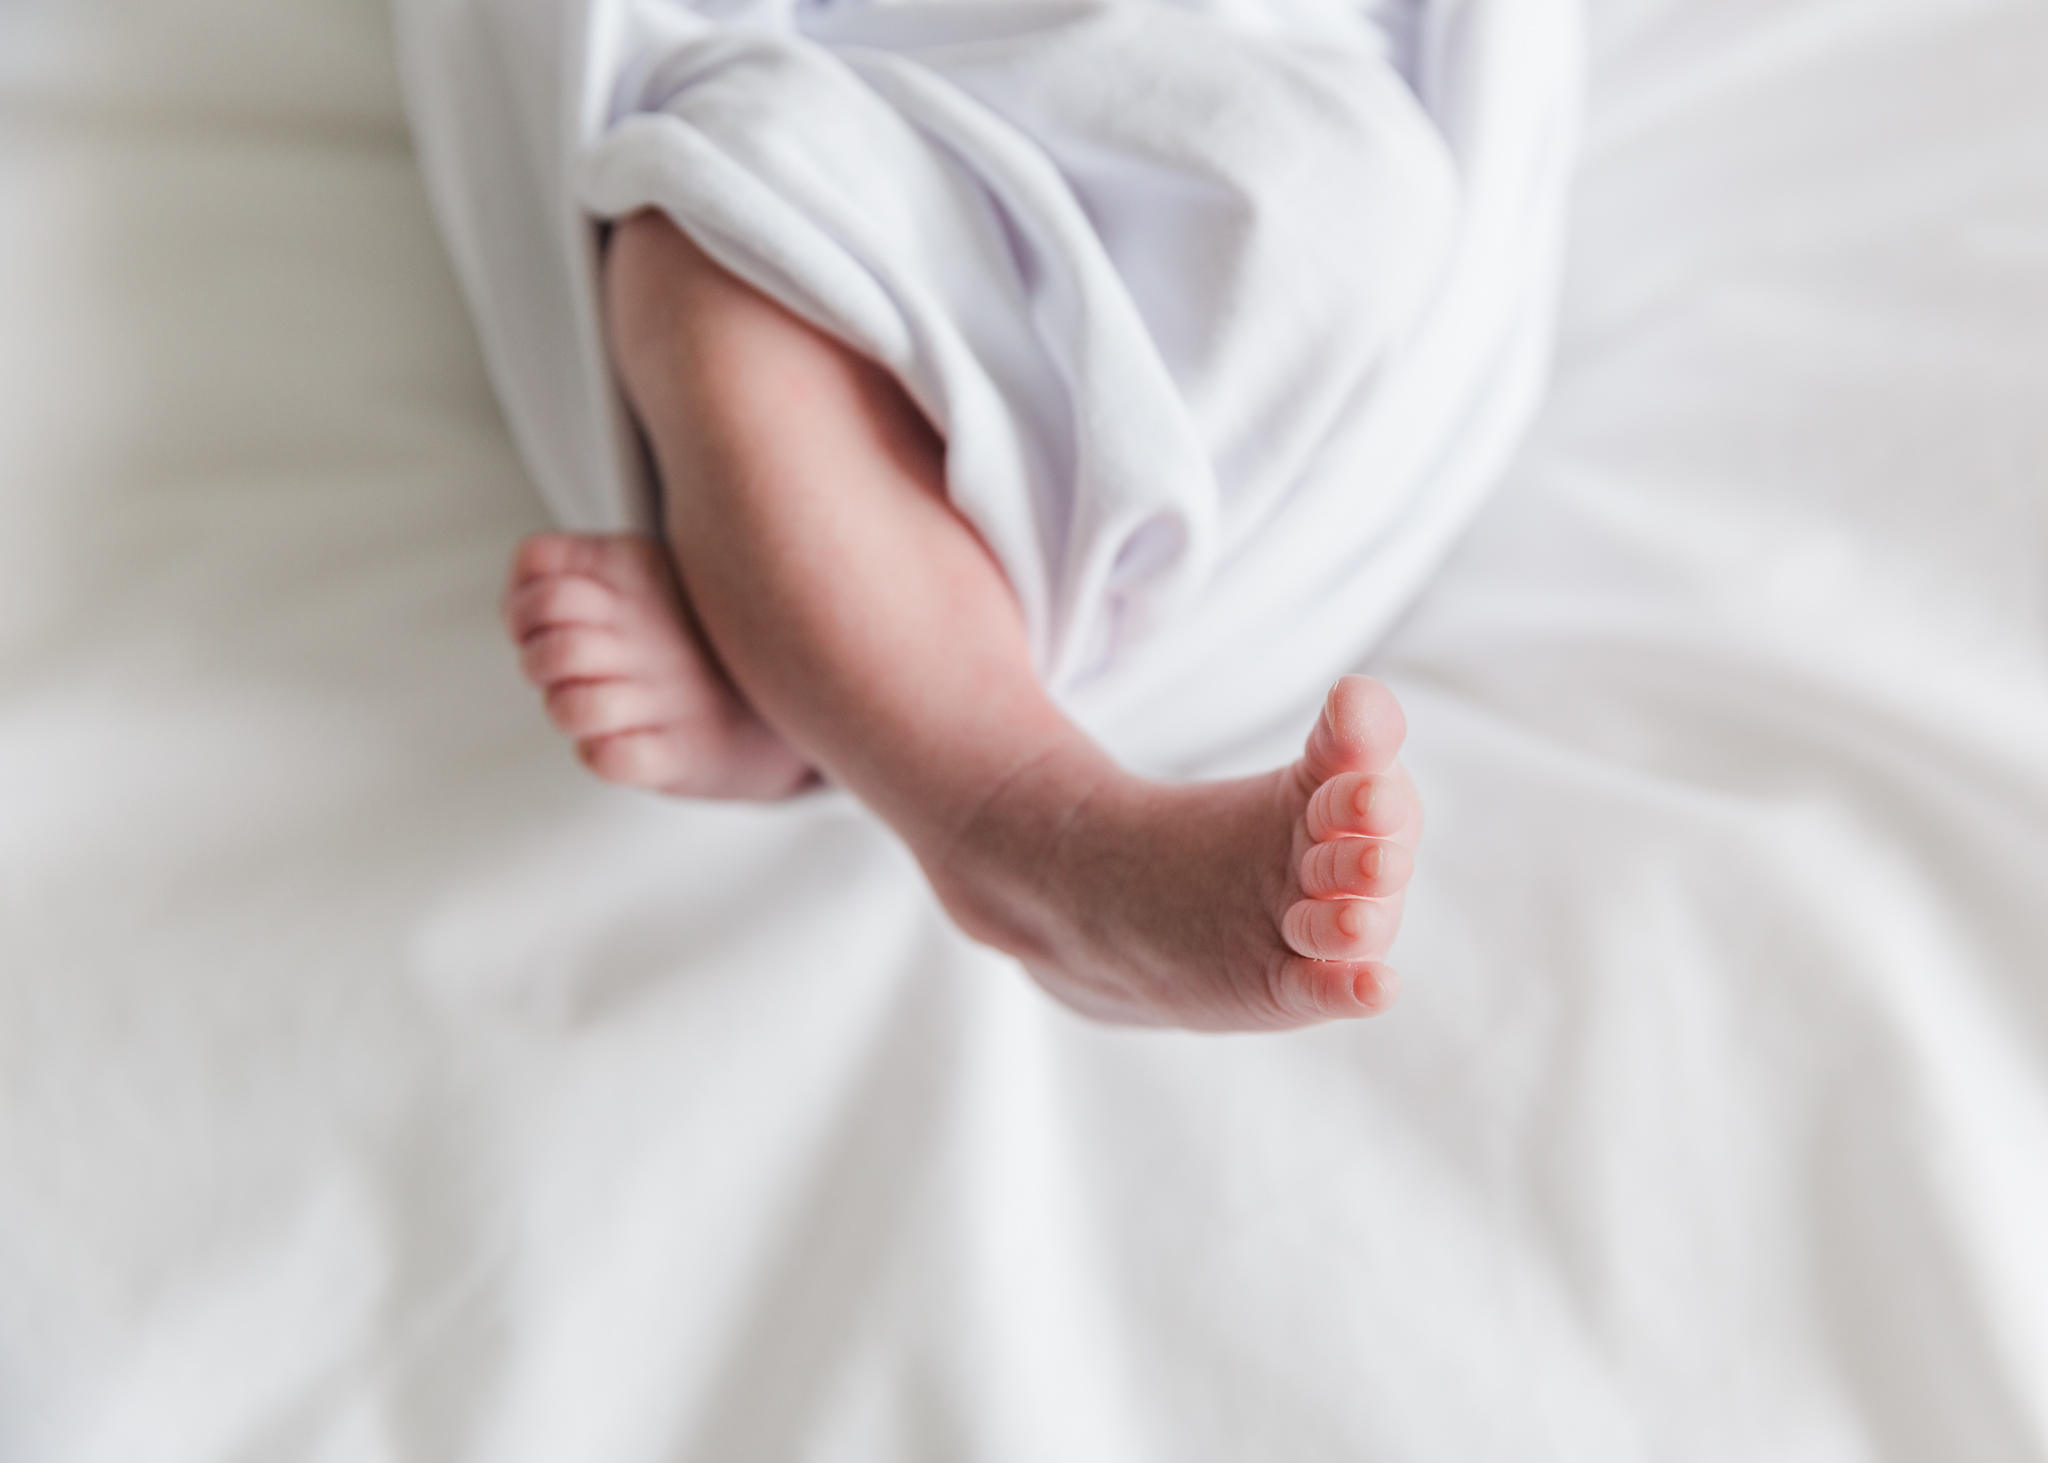 aberdeen newborn photographer at home newborn